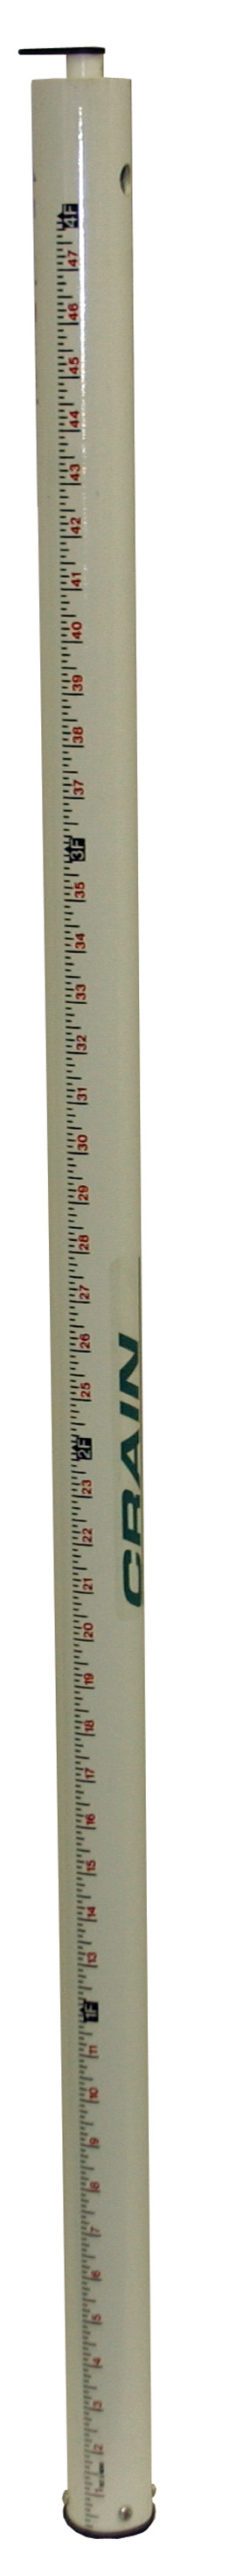 Rod Levels - Construction Measuring Ruler (CMR)